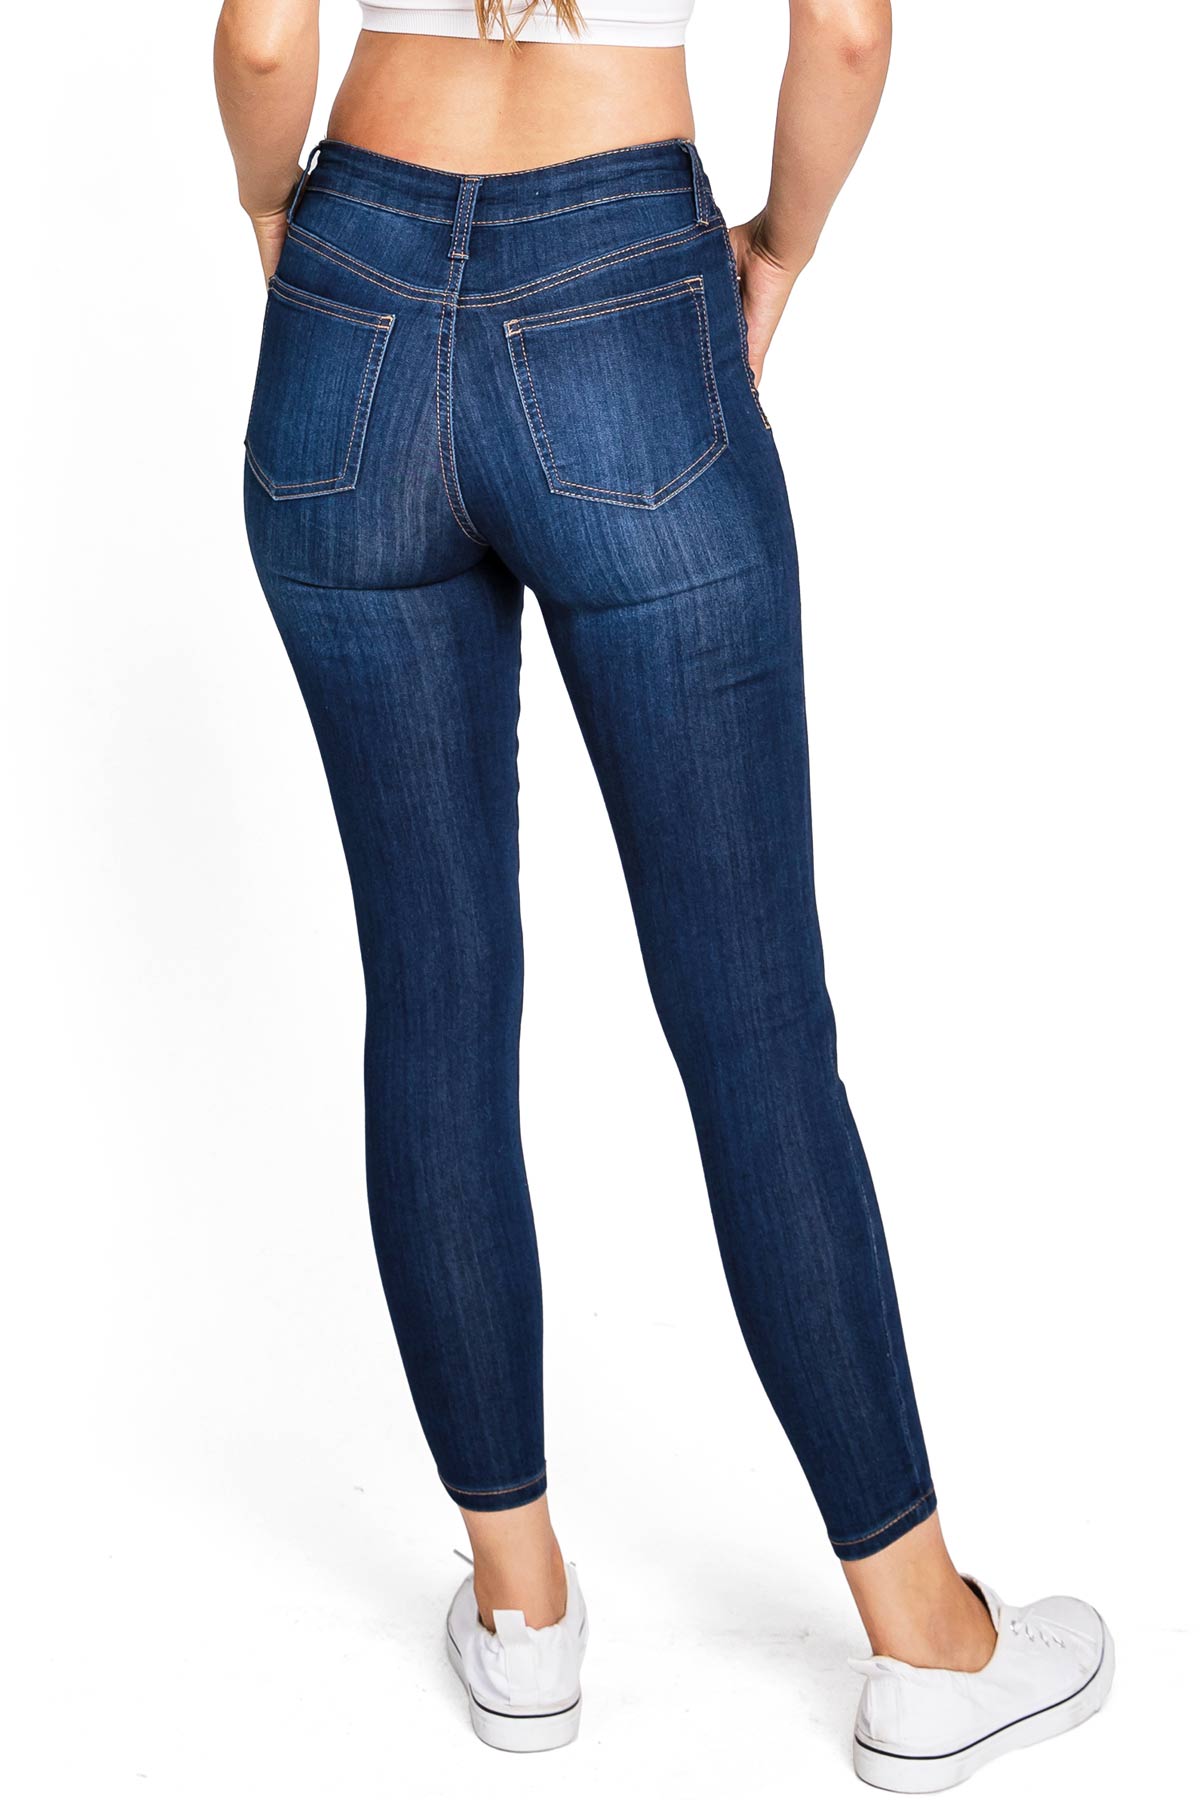 Posie Mid-Rise Skinny Jeans